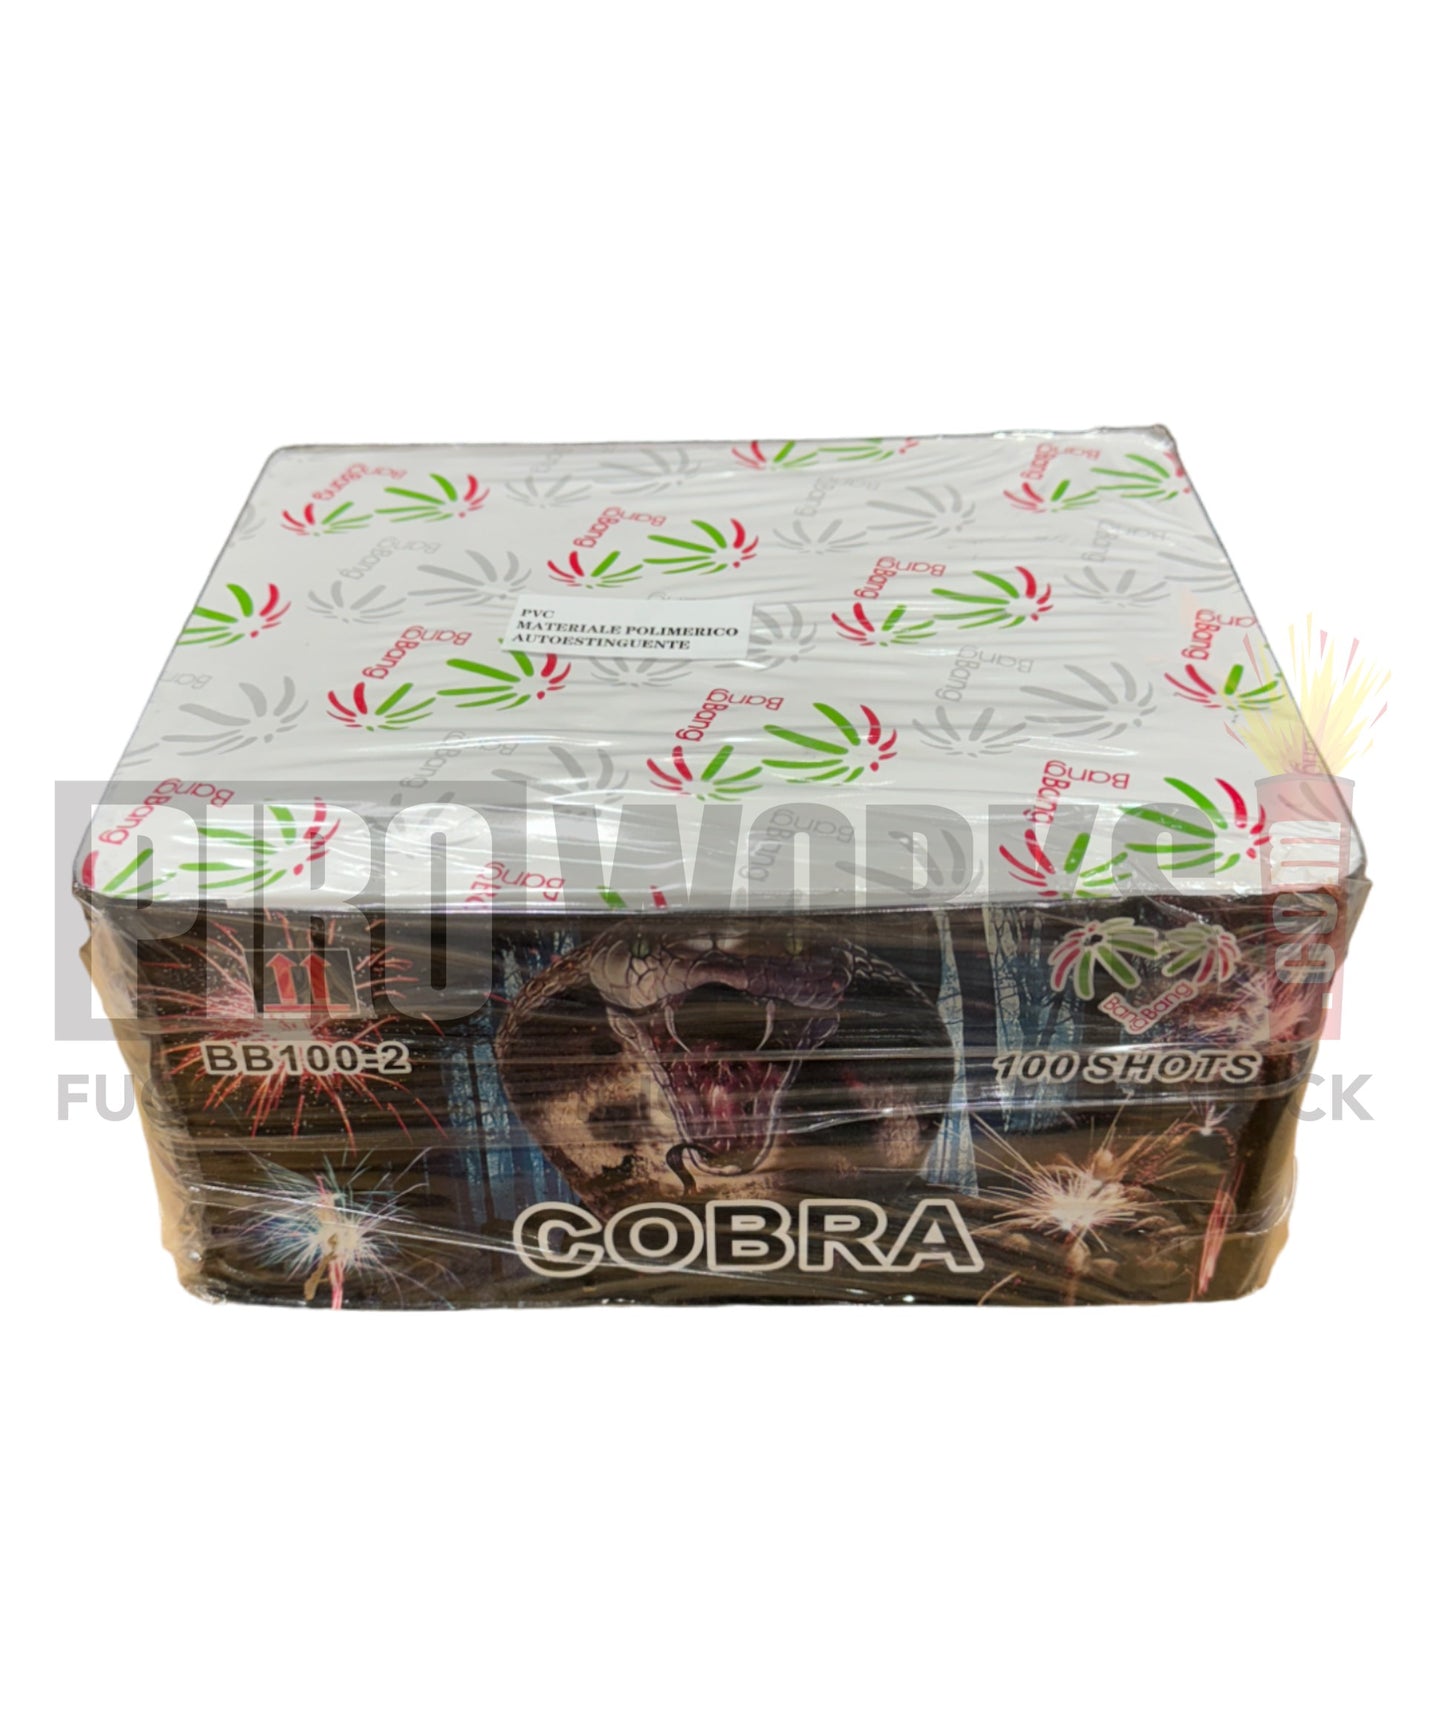 Cobra | 100 Hits | Allevi | 20mm